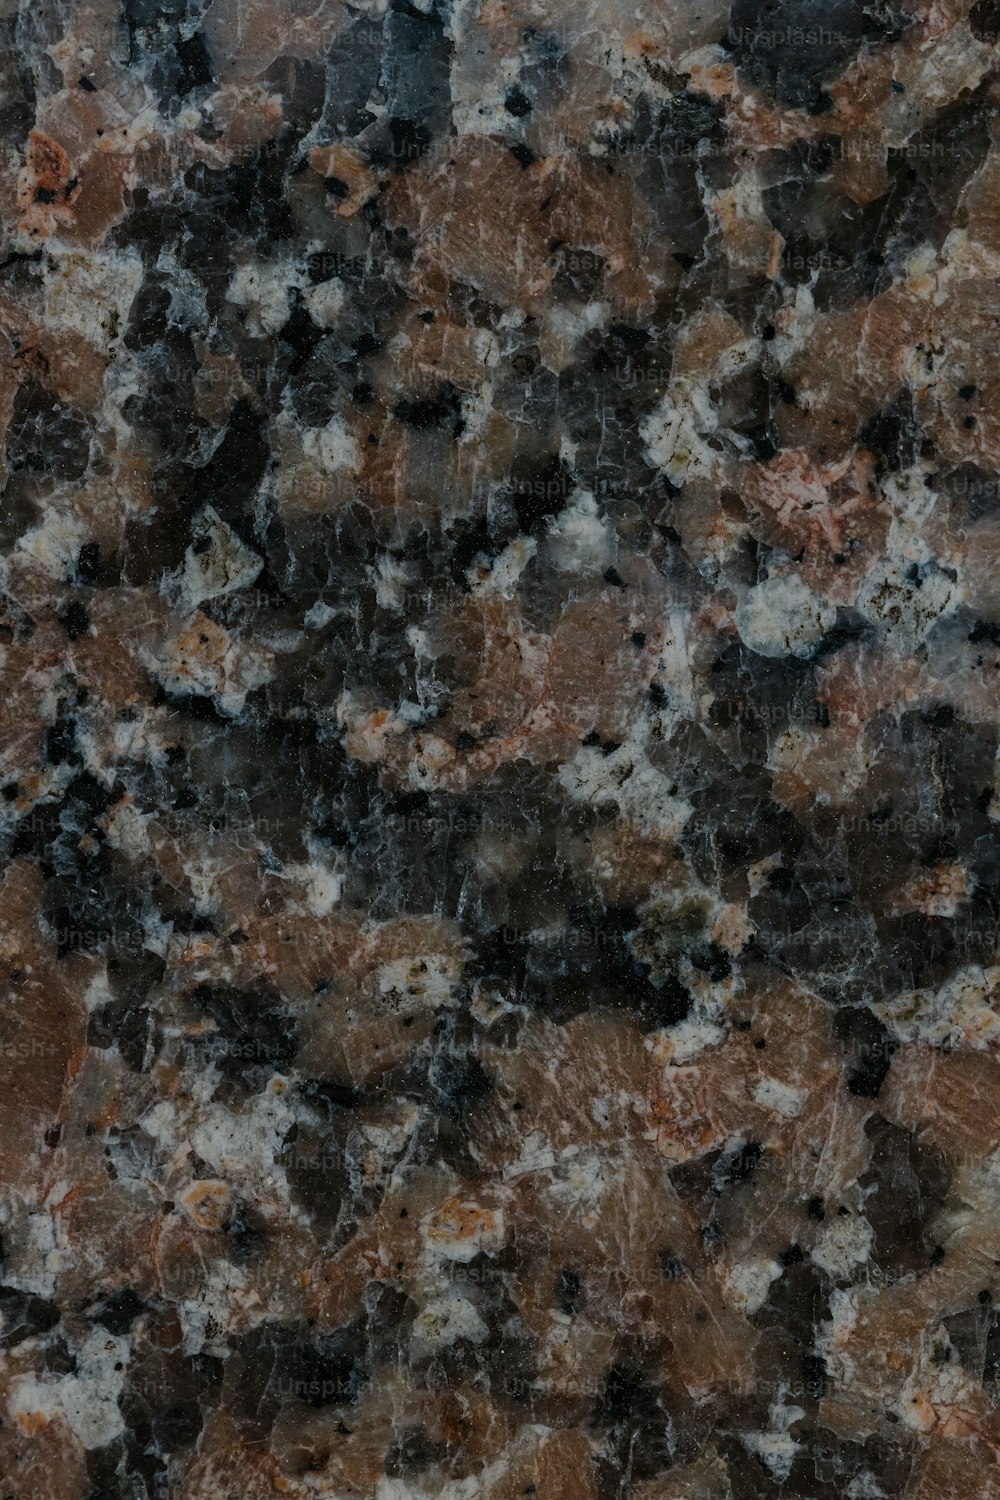 Un primer plano de una superficie de mármol que parece granito